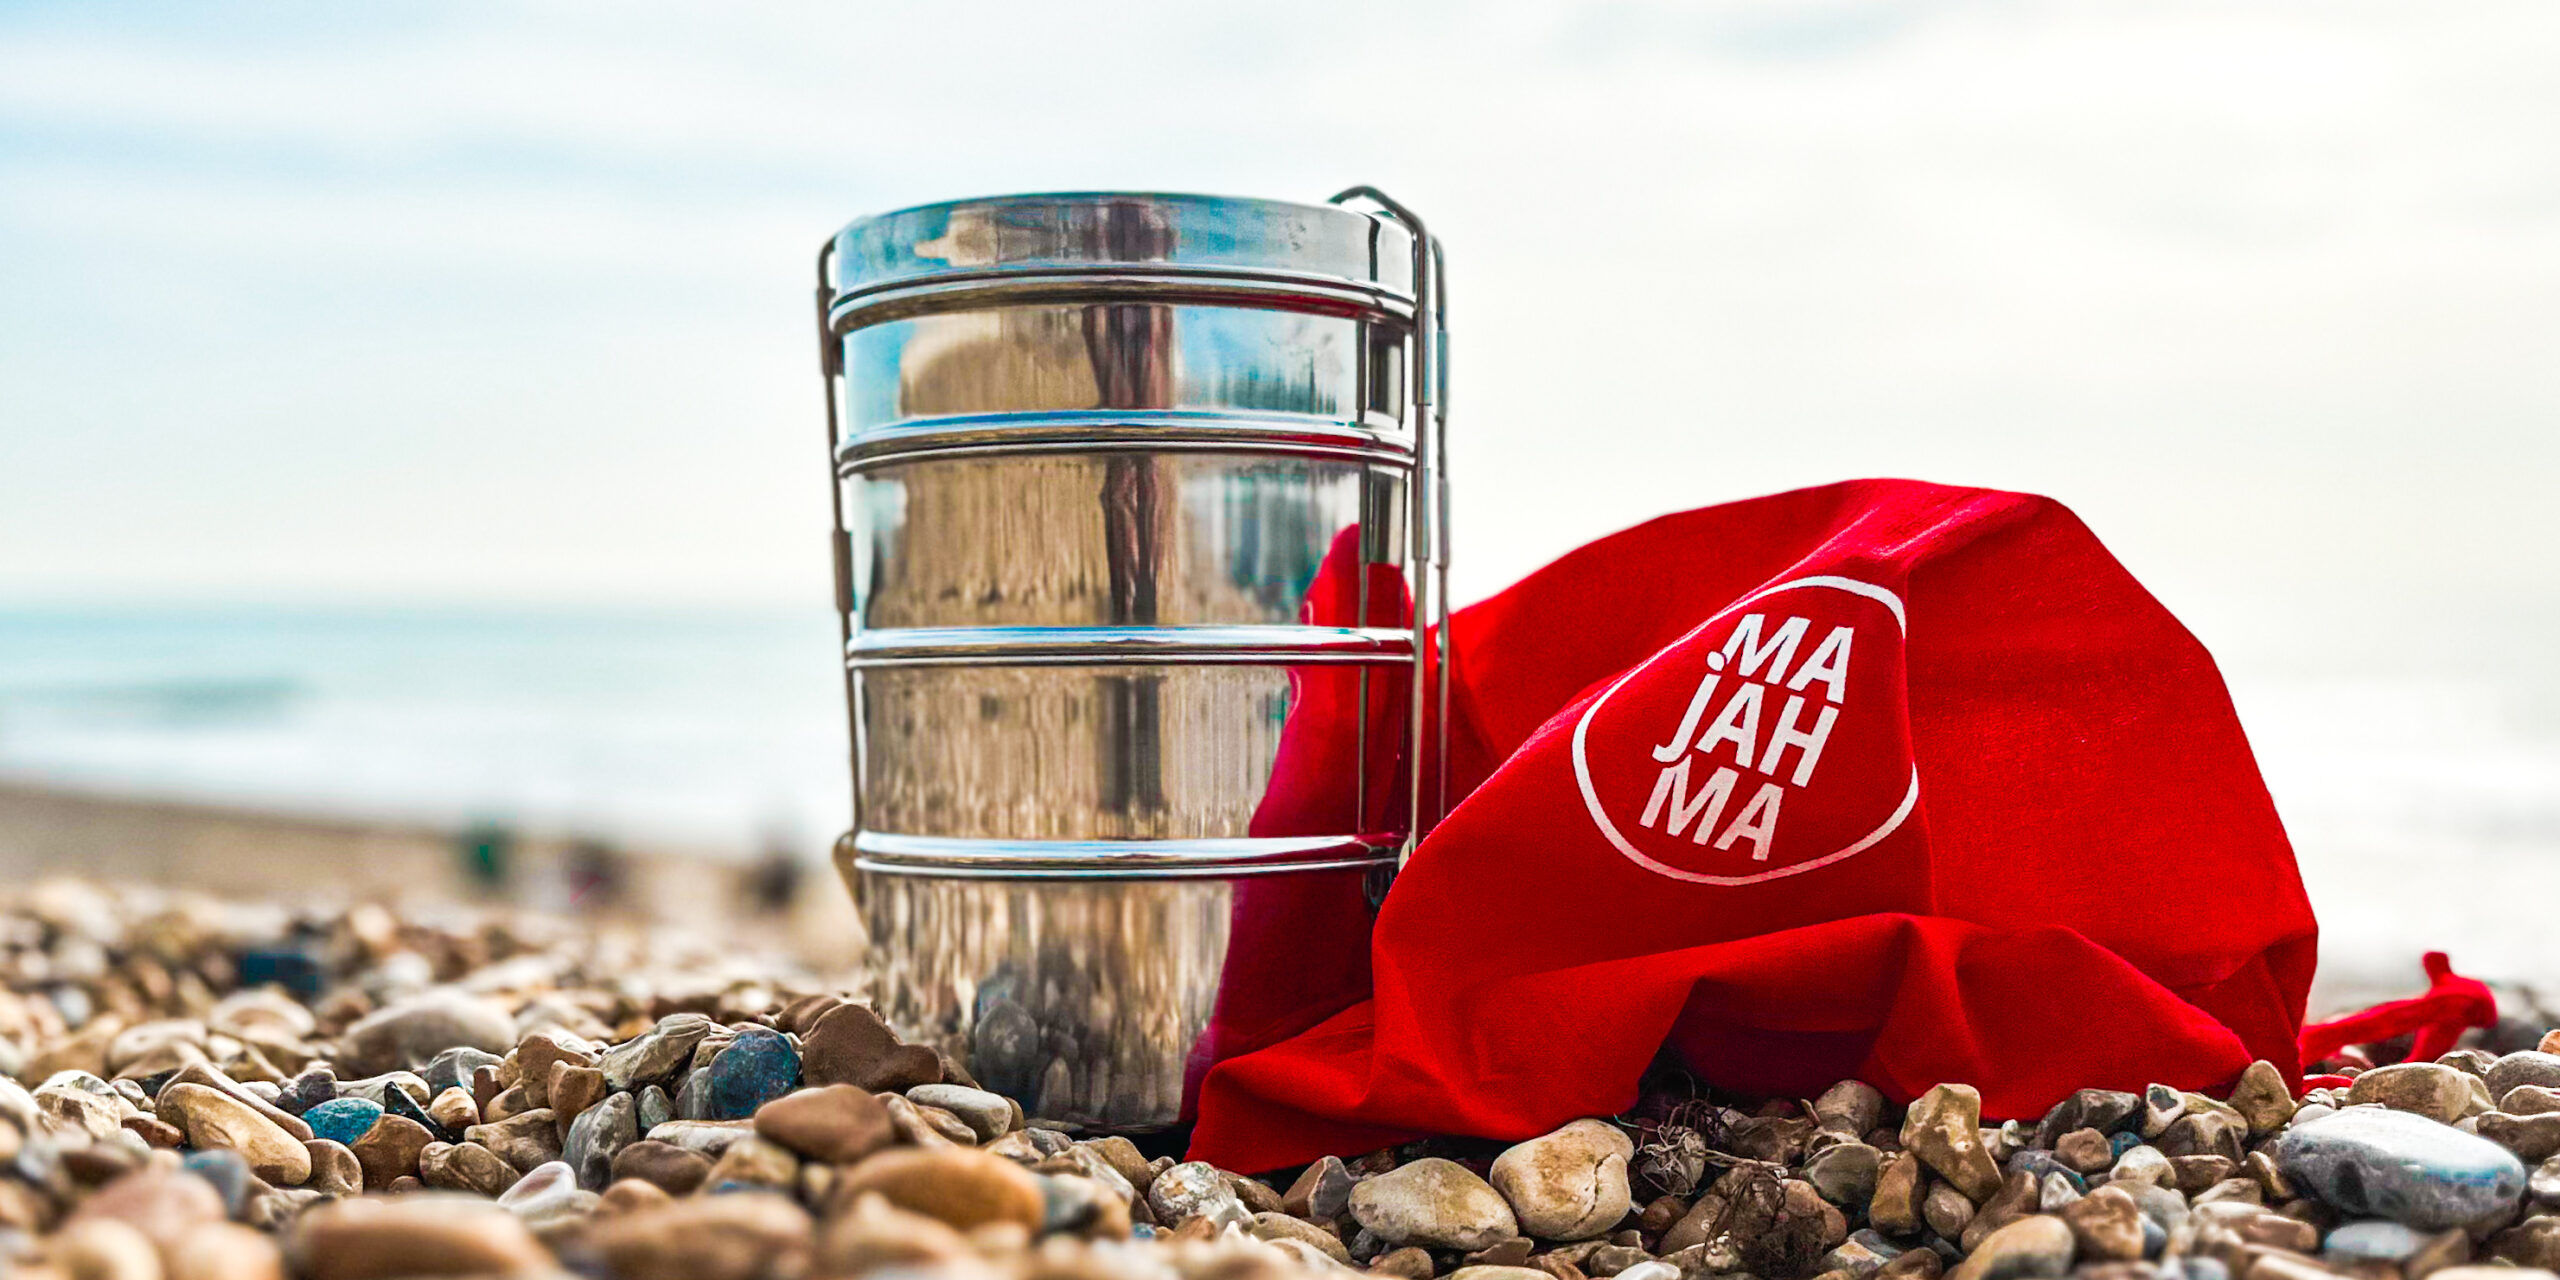 Majahma tiffin with red Majahma bag on Brighton beach